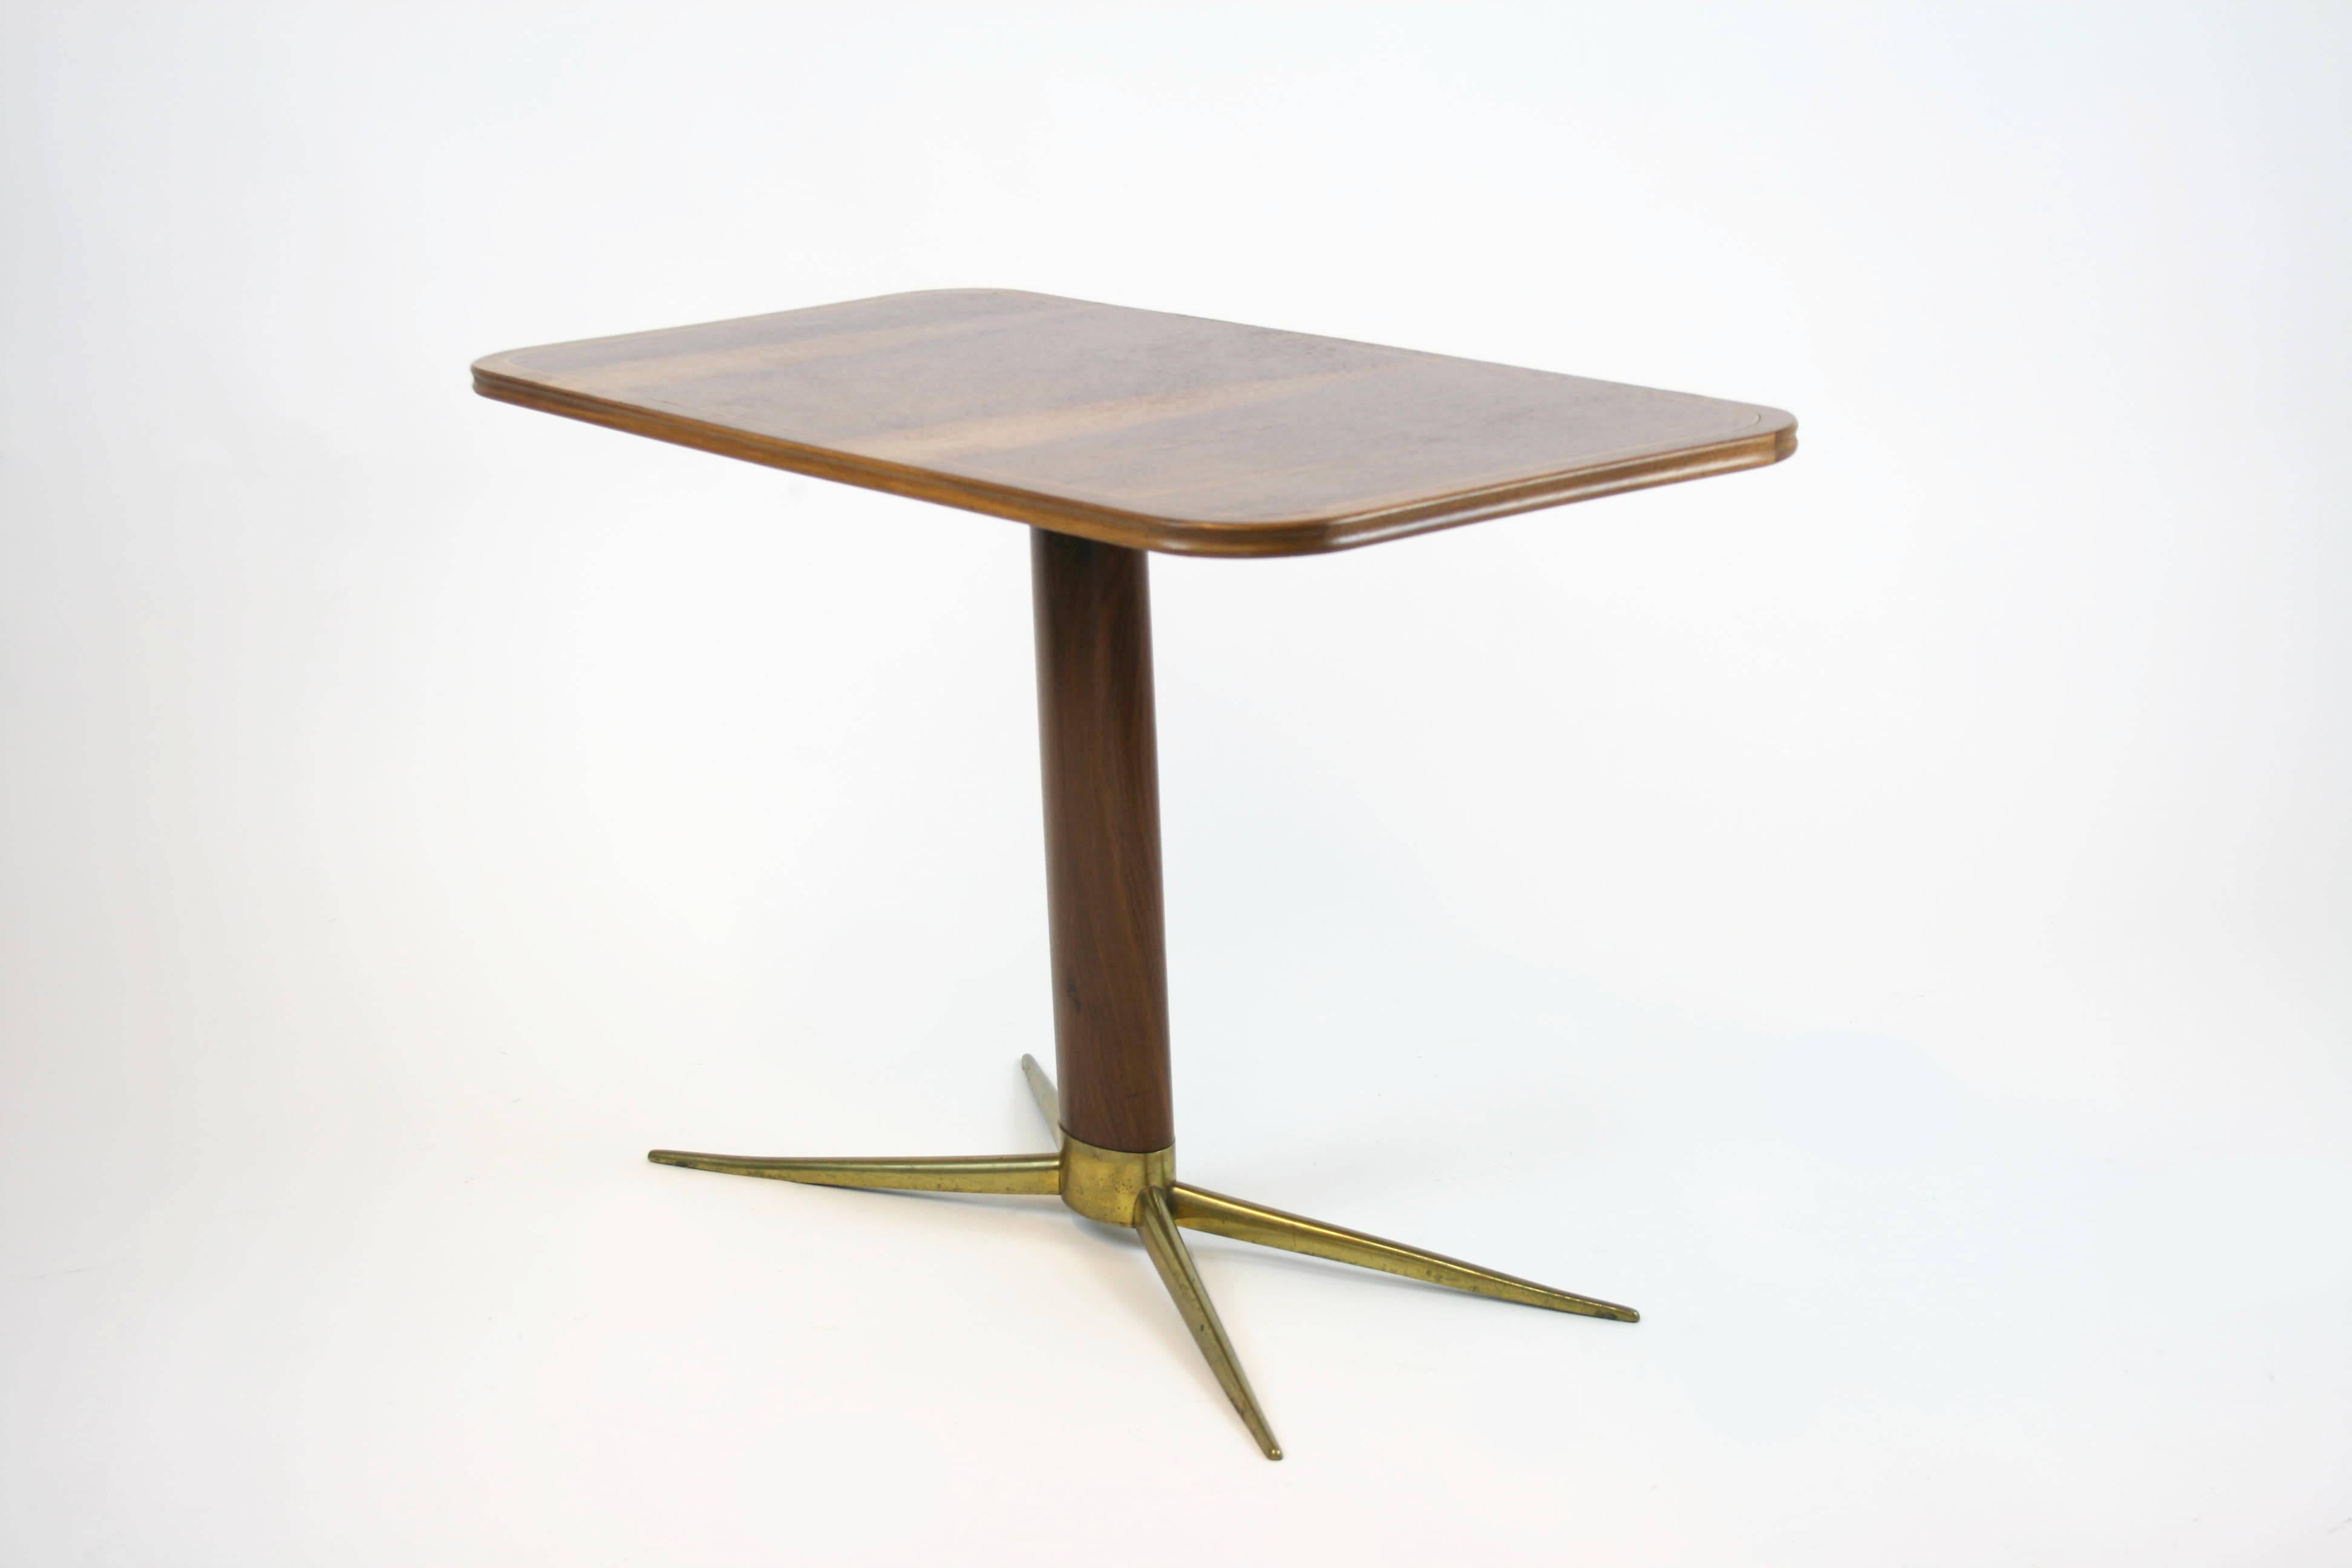 Merveilleuse table basse ou table d'appoint de l'architecte et designer autrichien Oswald Haerdtl fabriquée dans les années 1950. Cette table discrète séduit par un certain nombre de subtilités stylistiques, telles qu'une tige elliptique. Les côtés